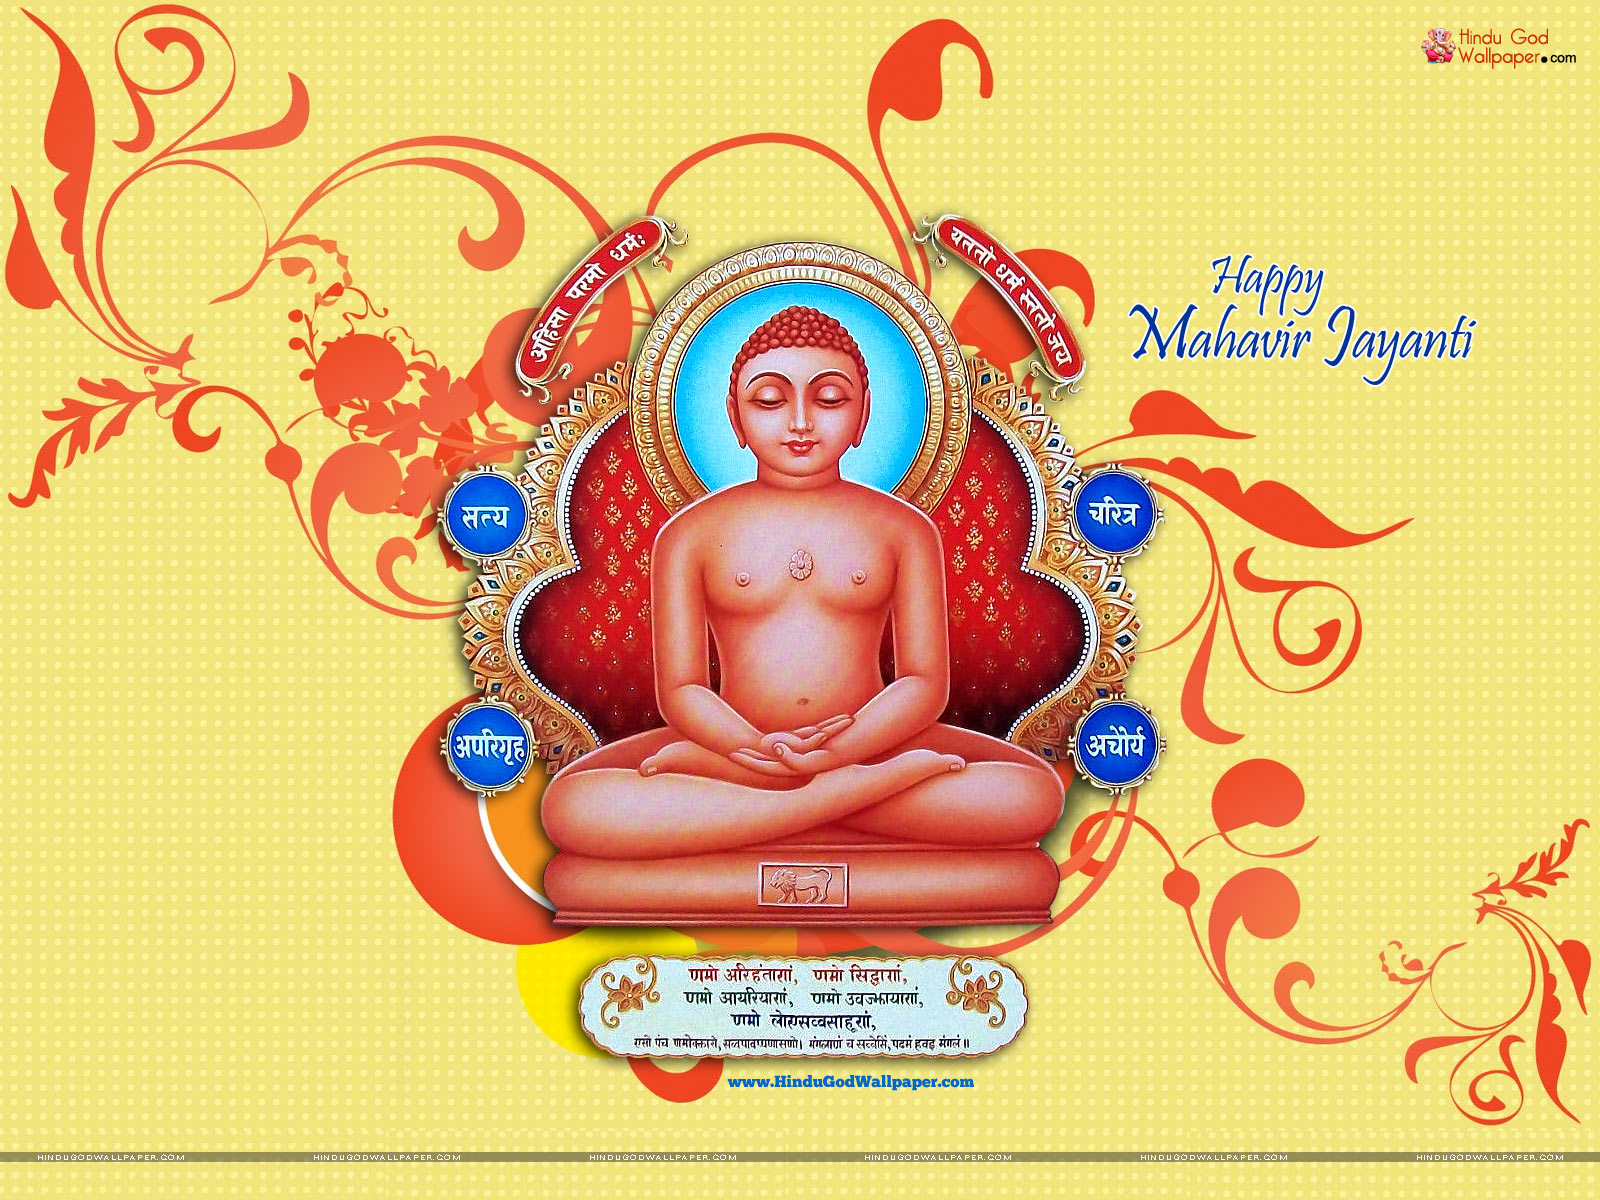 Mahavir Swami Image And Wallpaper